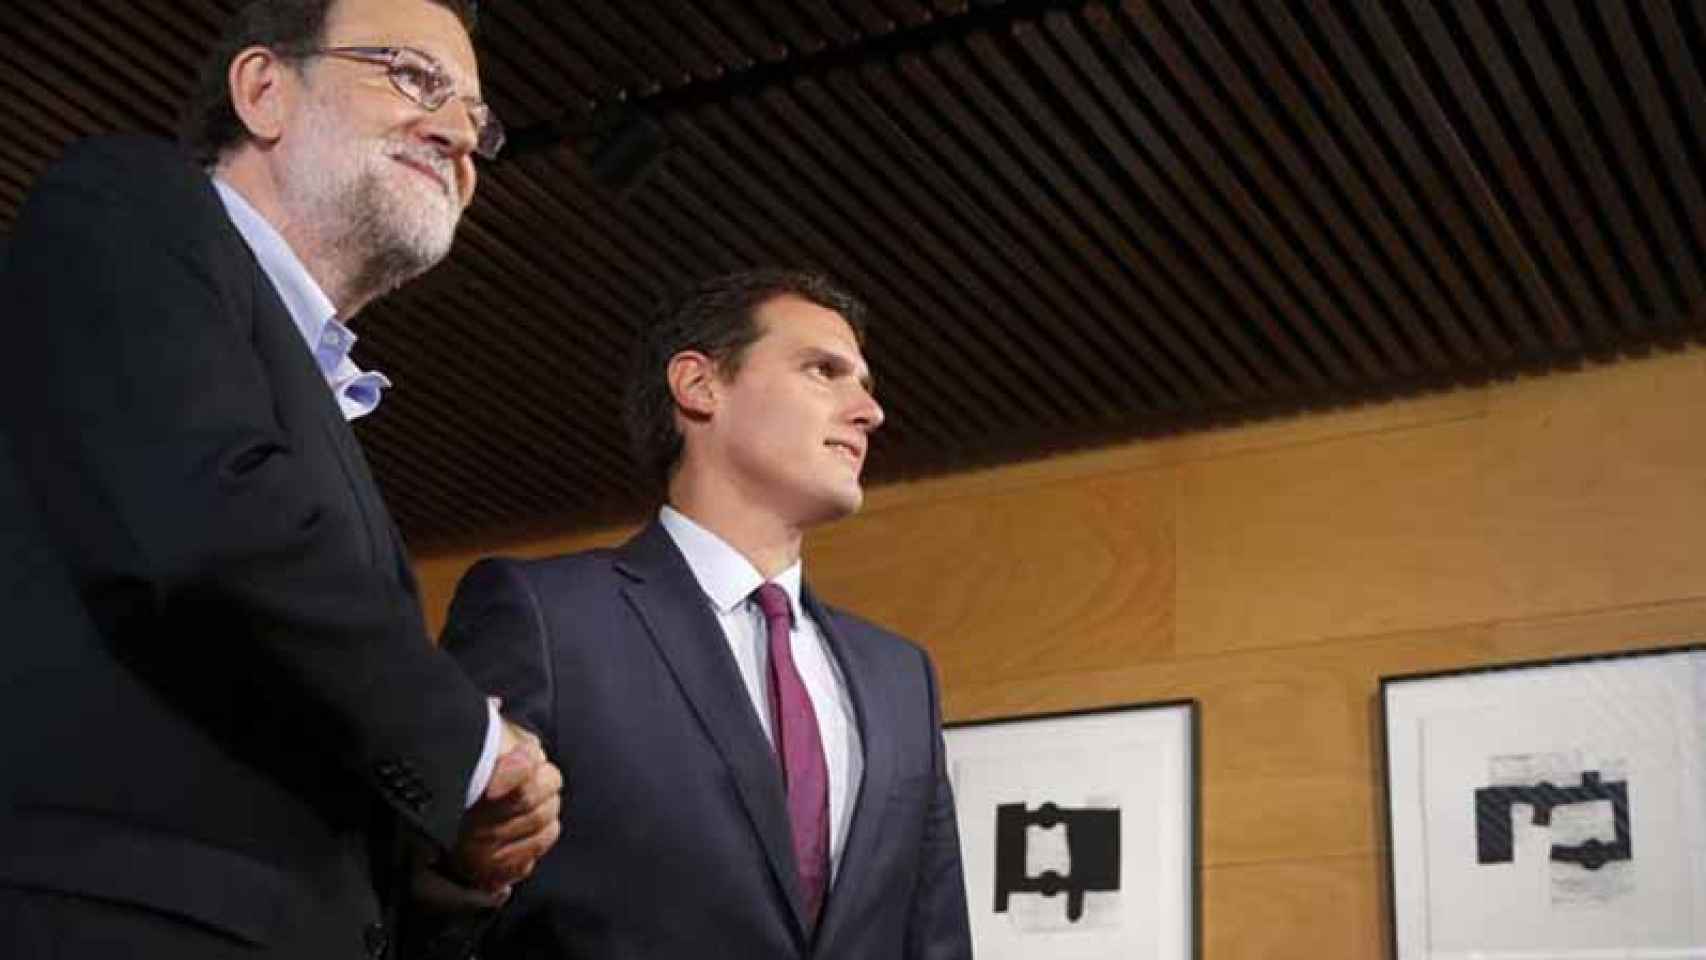 El presidente del Gobierno en funciones, Mariano Rajoy, y el líder de Ciudadanos, Albert Rivera, se saludan al inicio de la reunión que han mantenido hoy en el Congreso. / EFE